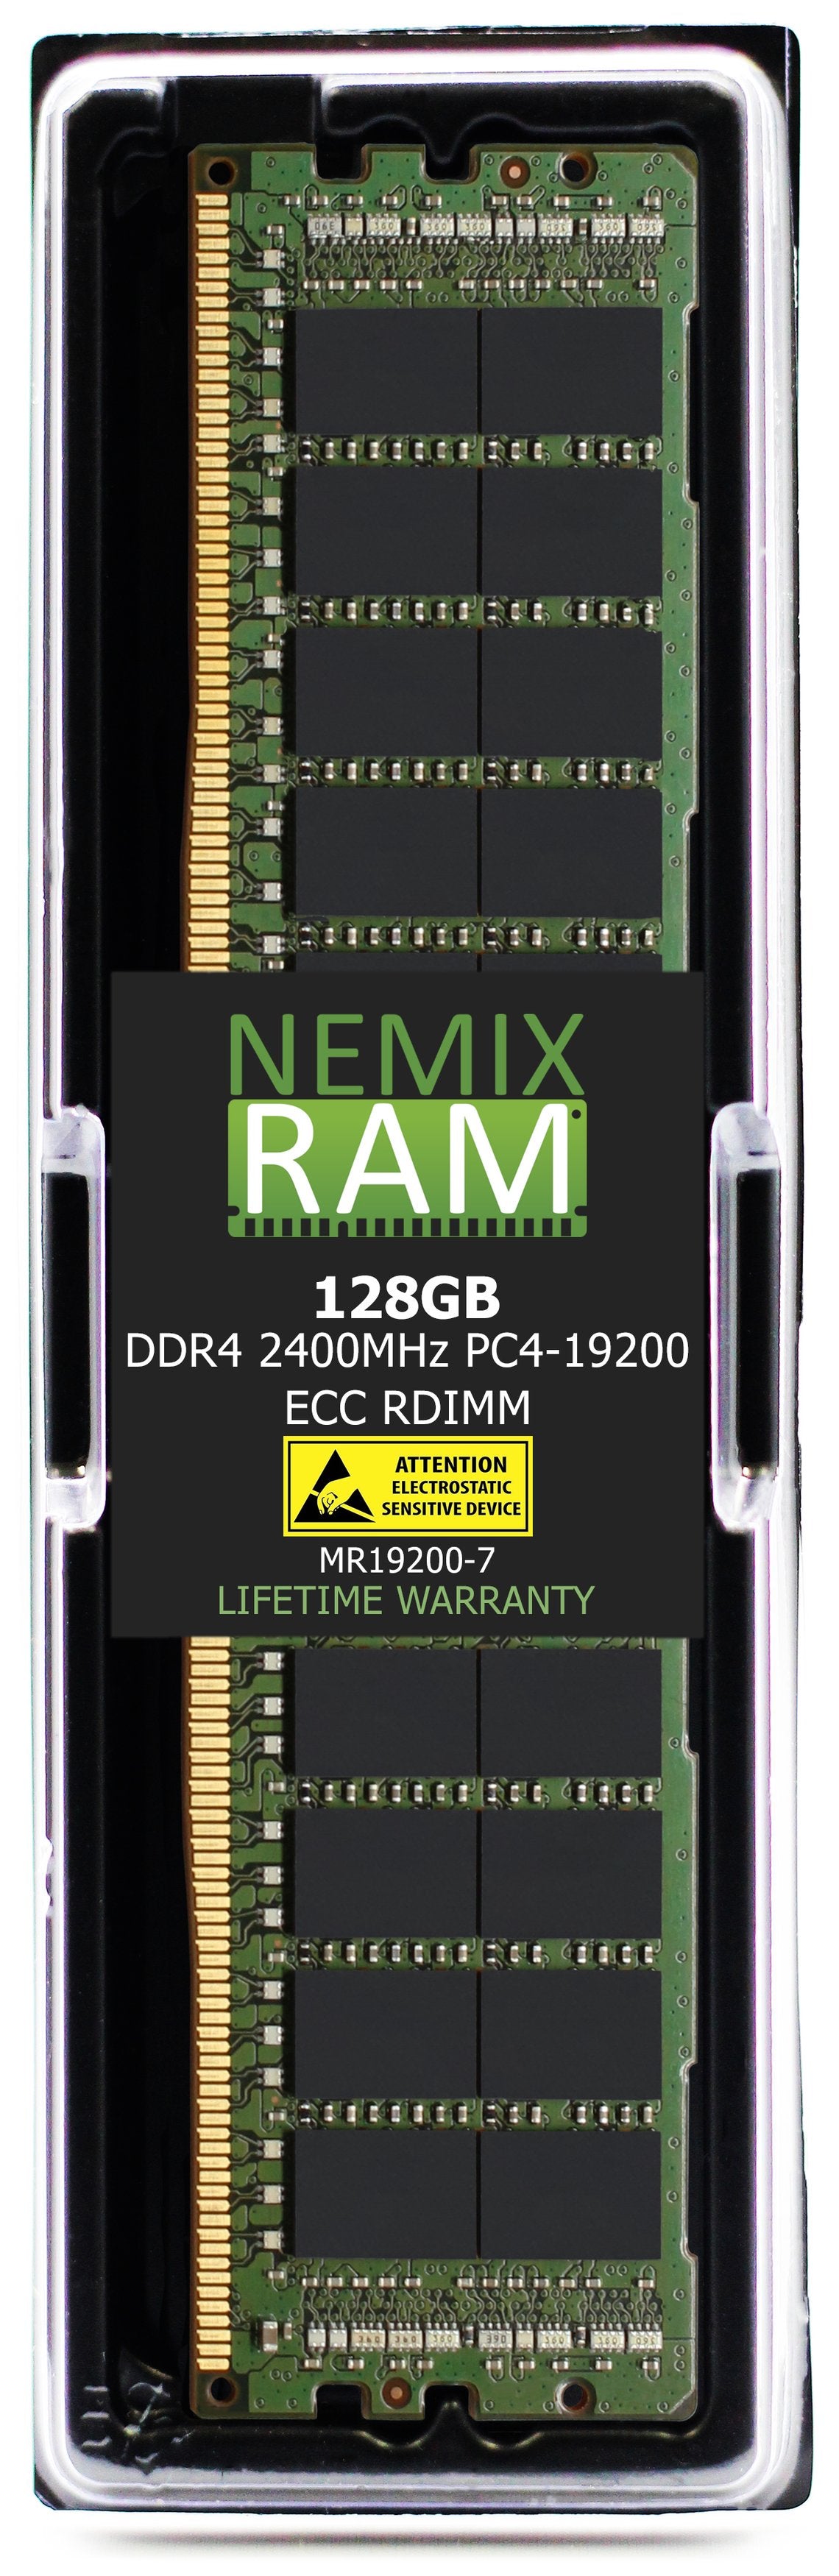 Hynix HMABAGR7A4R4N-UL 128GB DDR4 2400MHZ PC4-19200 RDIMM Compatible Memory Module